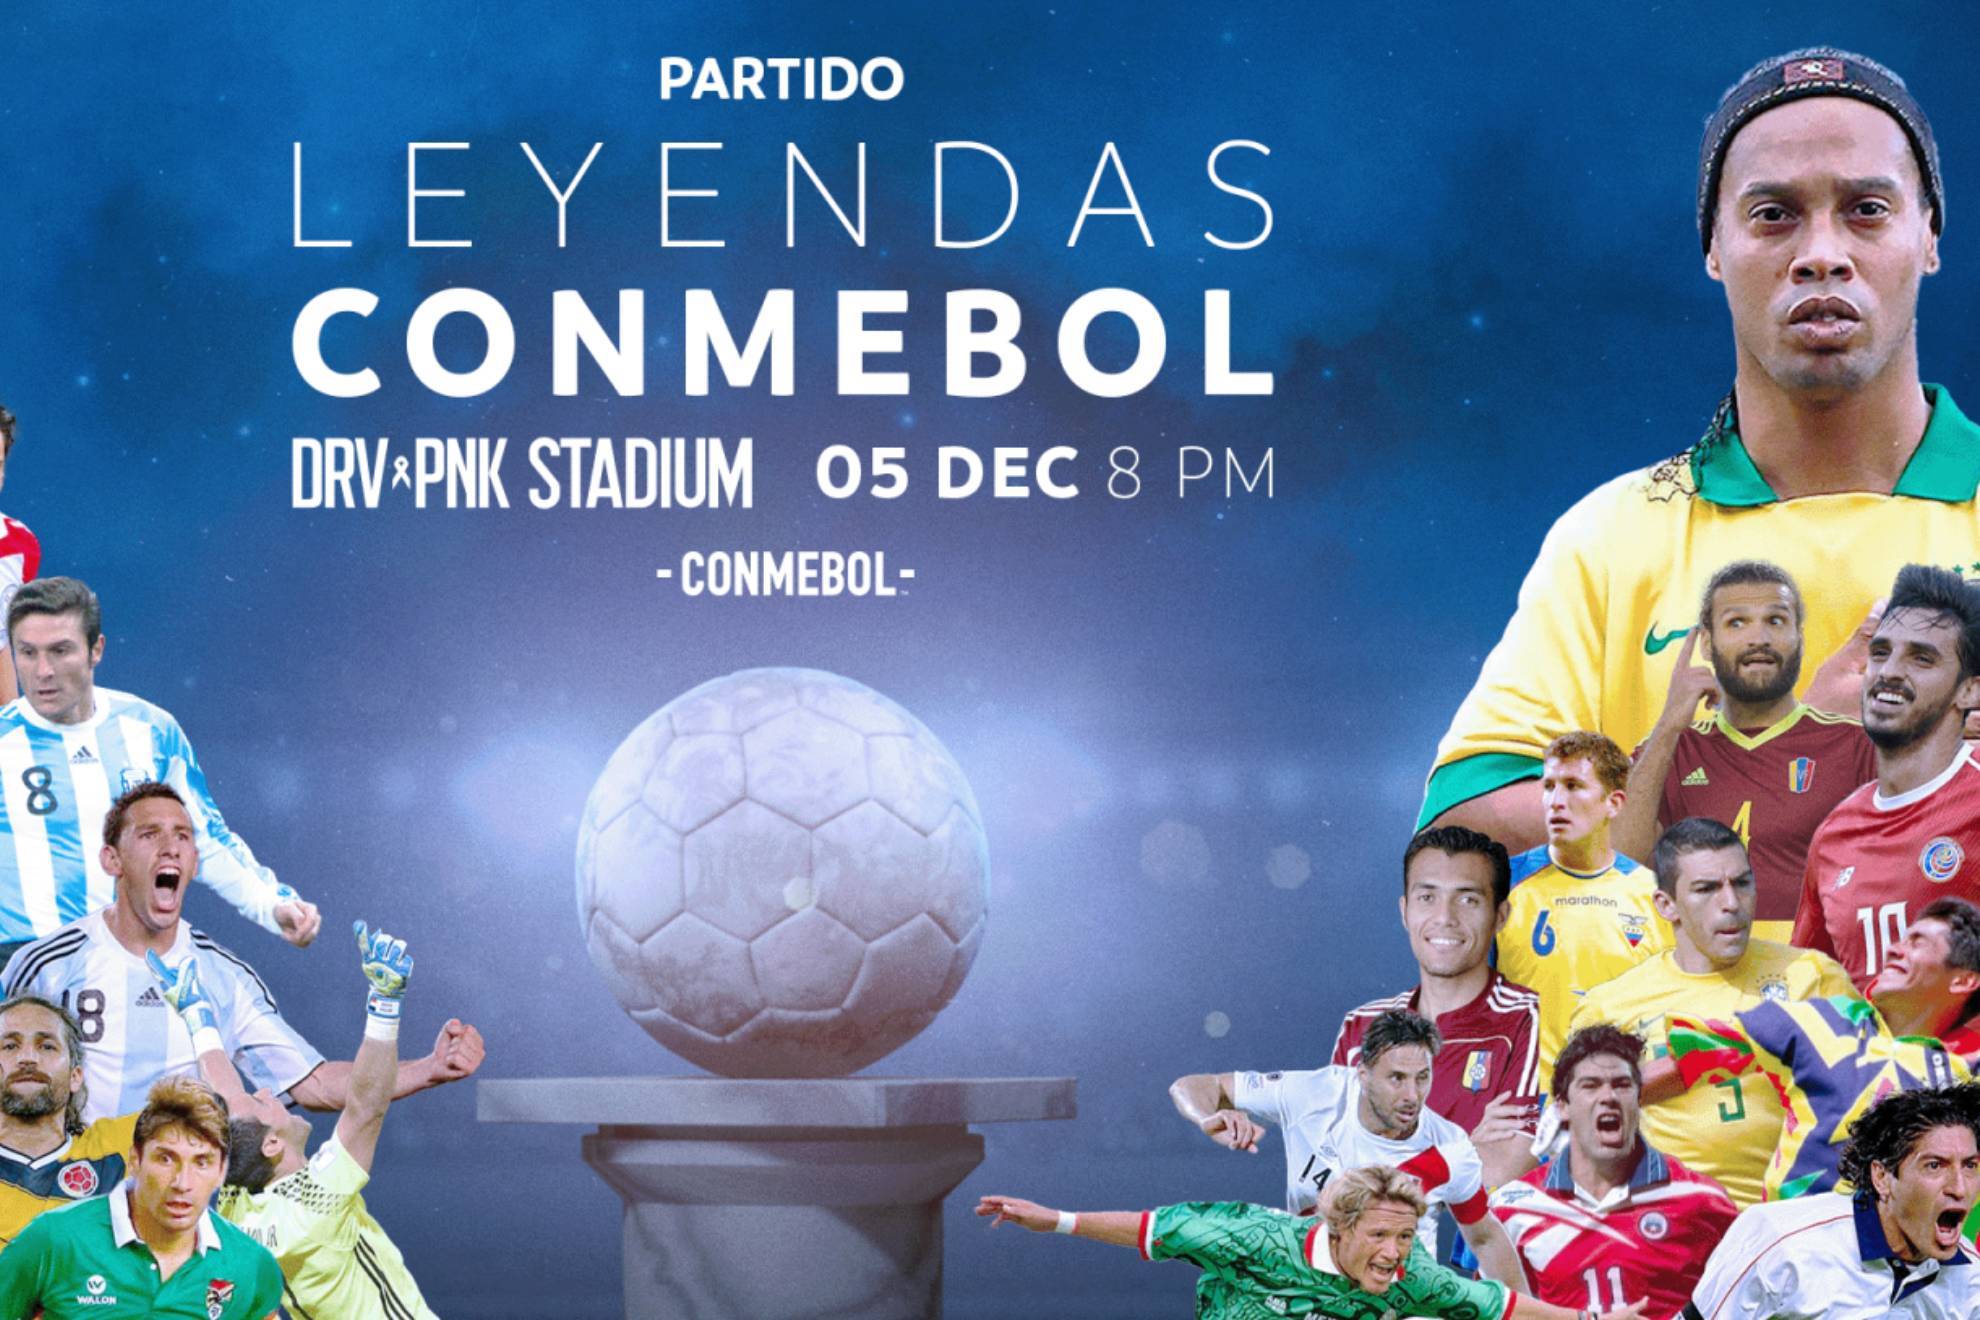 Con tres mexicanos, los equipos del Partido de Leyendas de Conmebol que se jugar en la casa de Messi